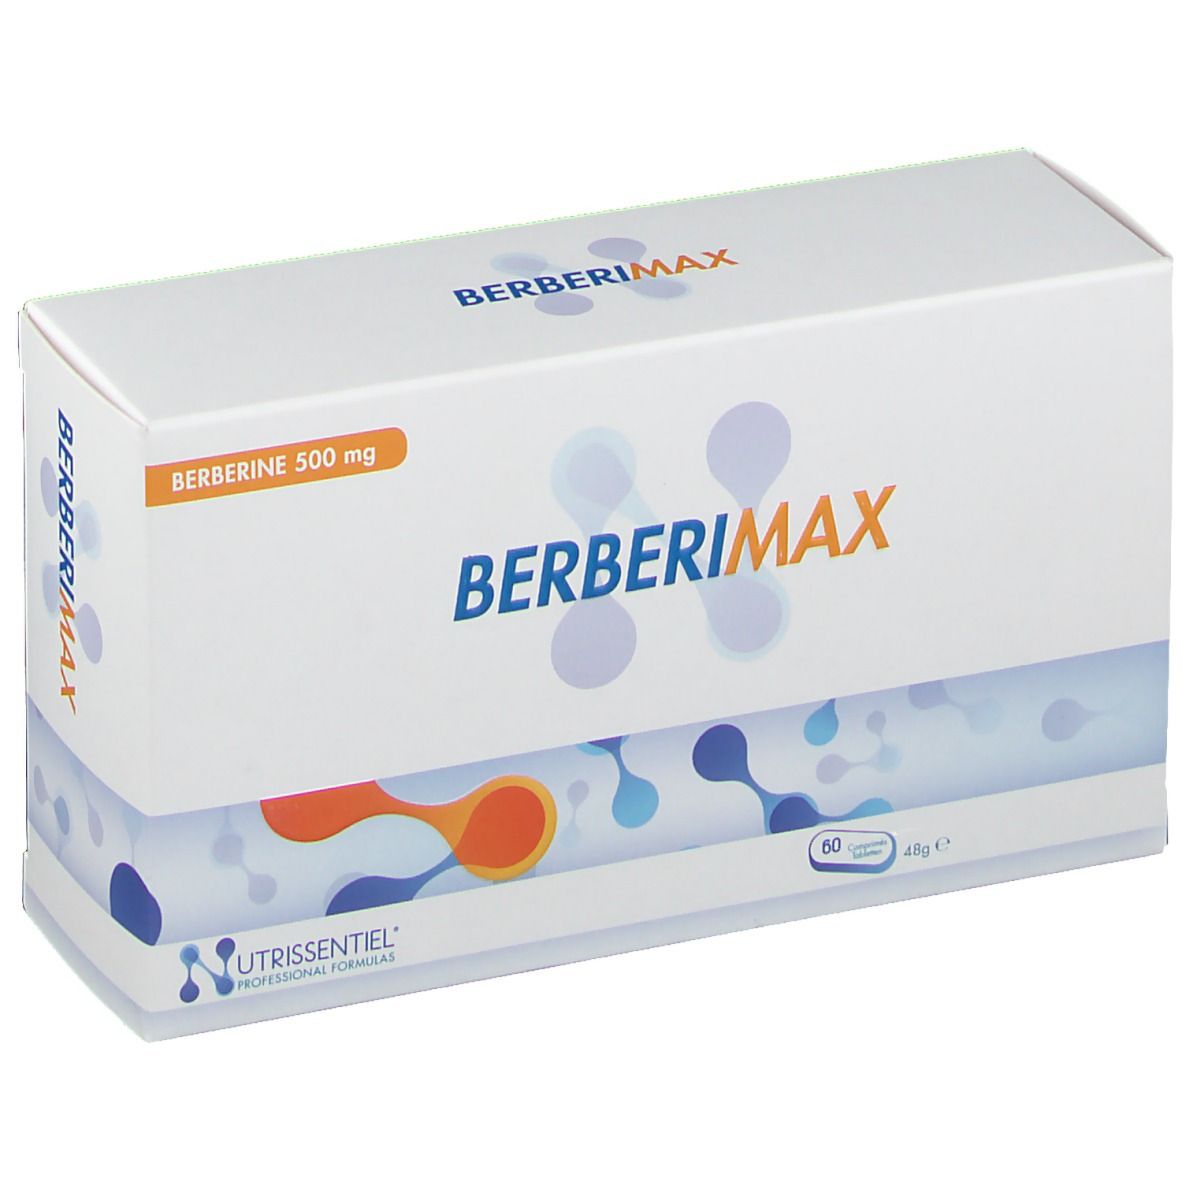 Berberimax